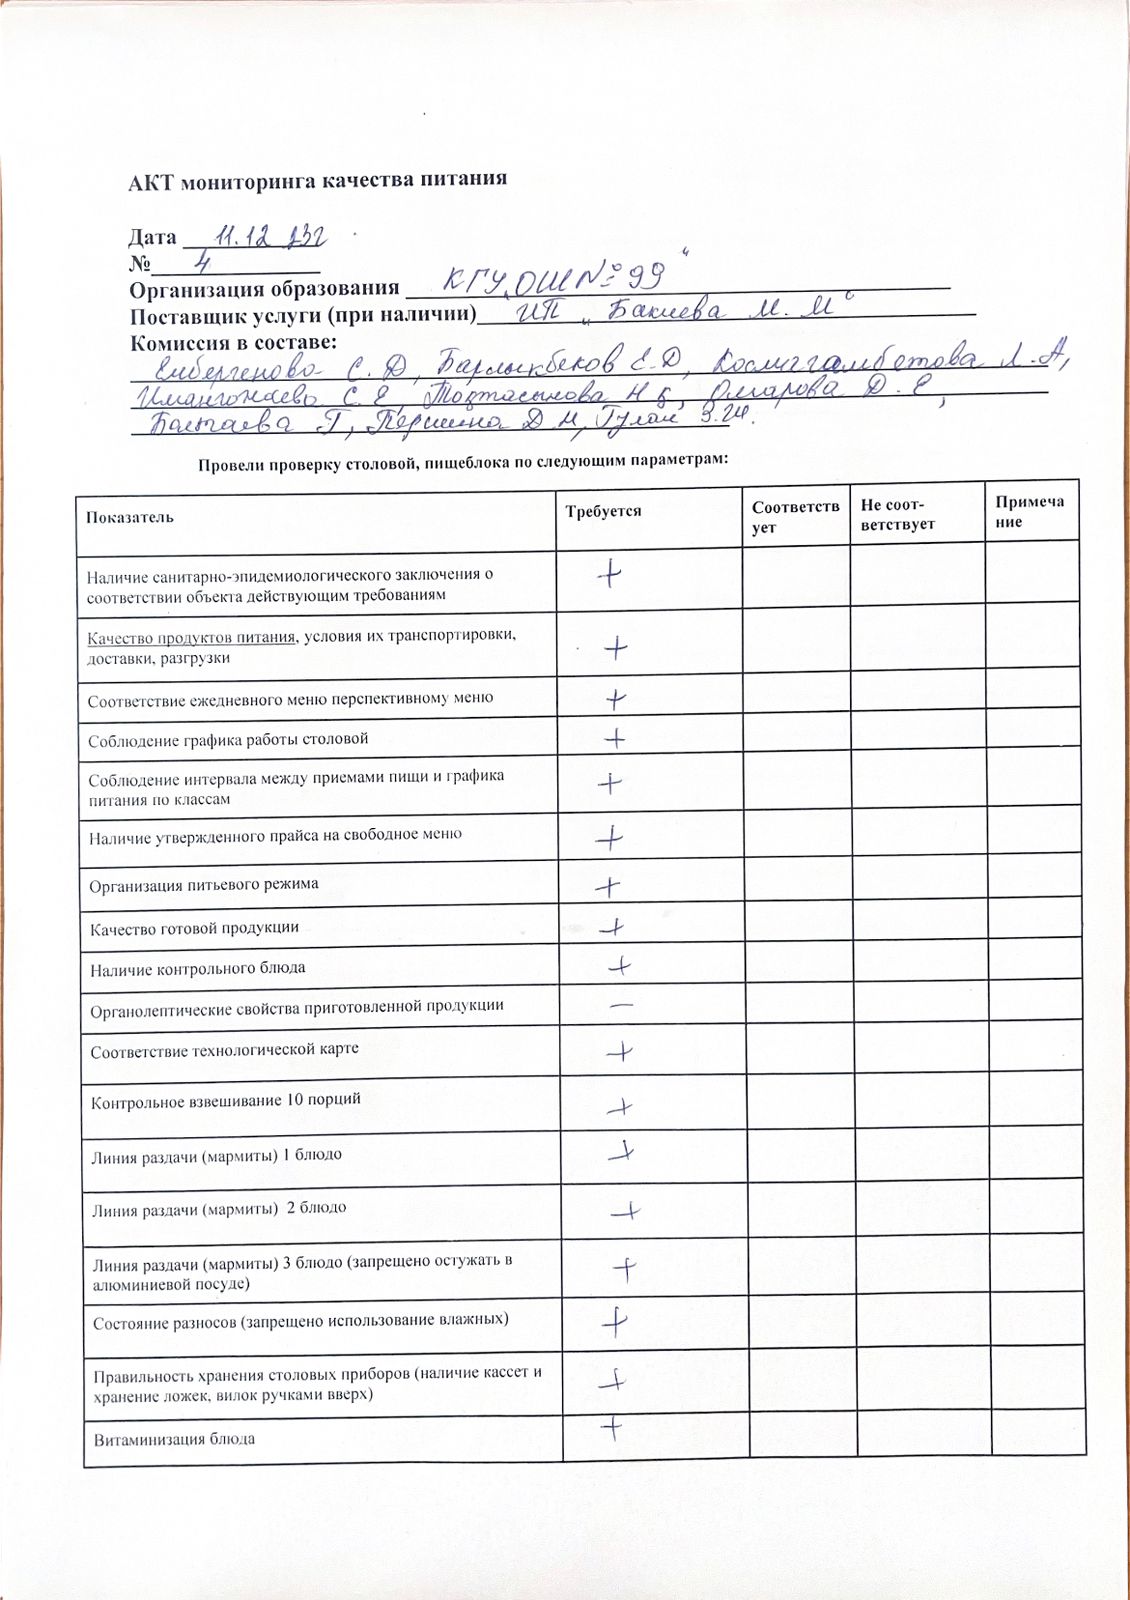 Тамақтандырудың желтоқсан айына сапалық бақылау АКТ-і/ АКТ мониторинга качества